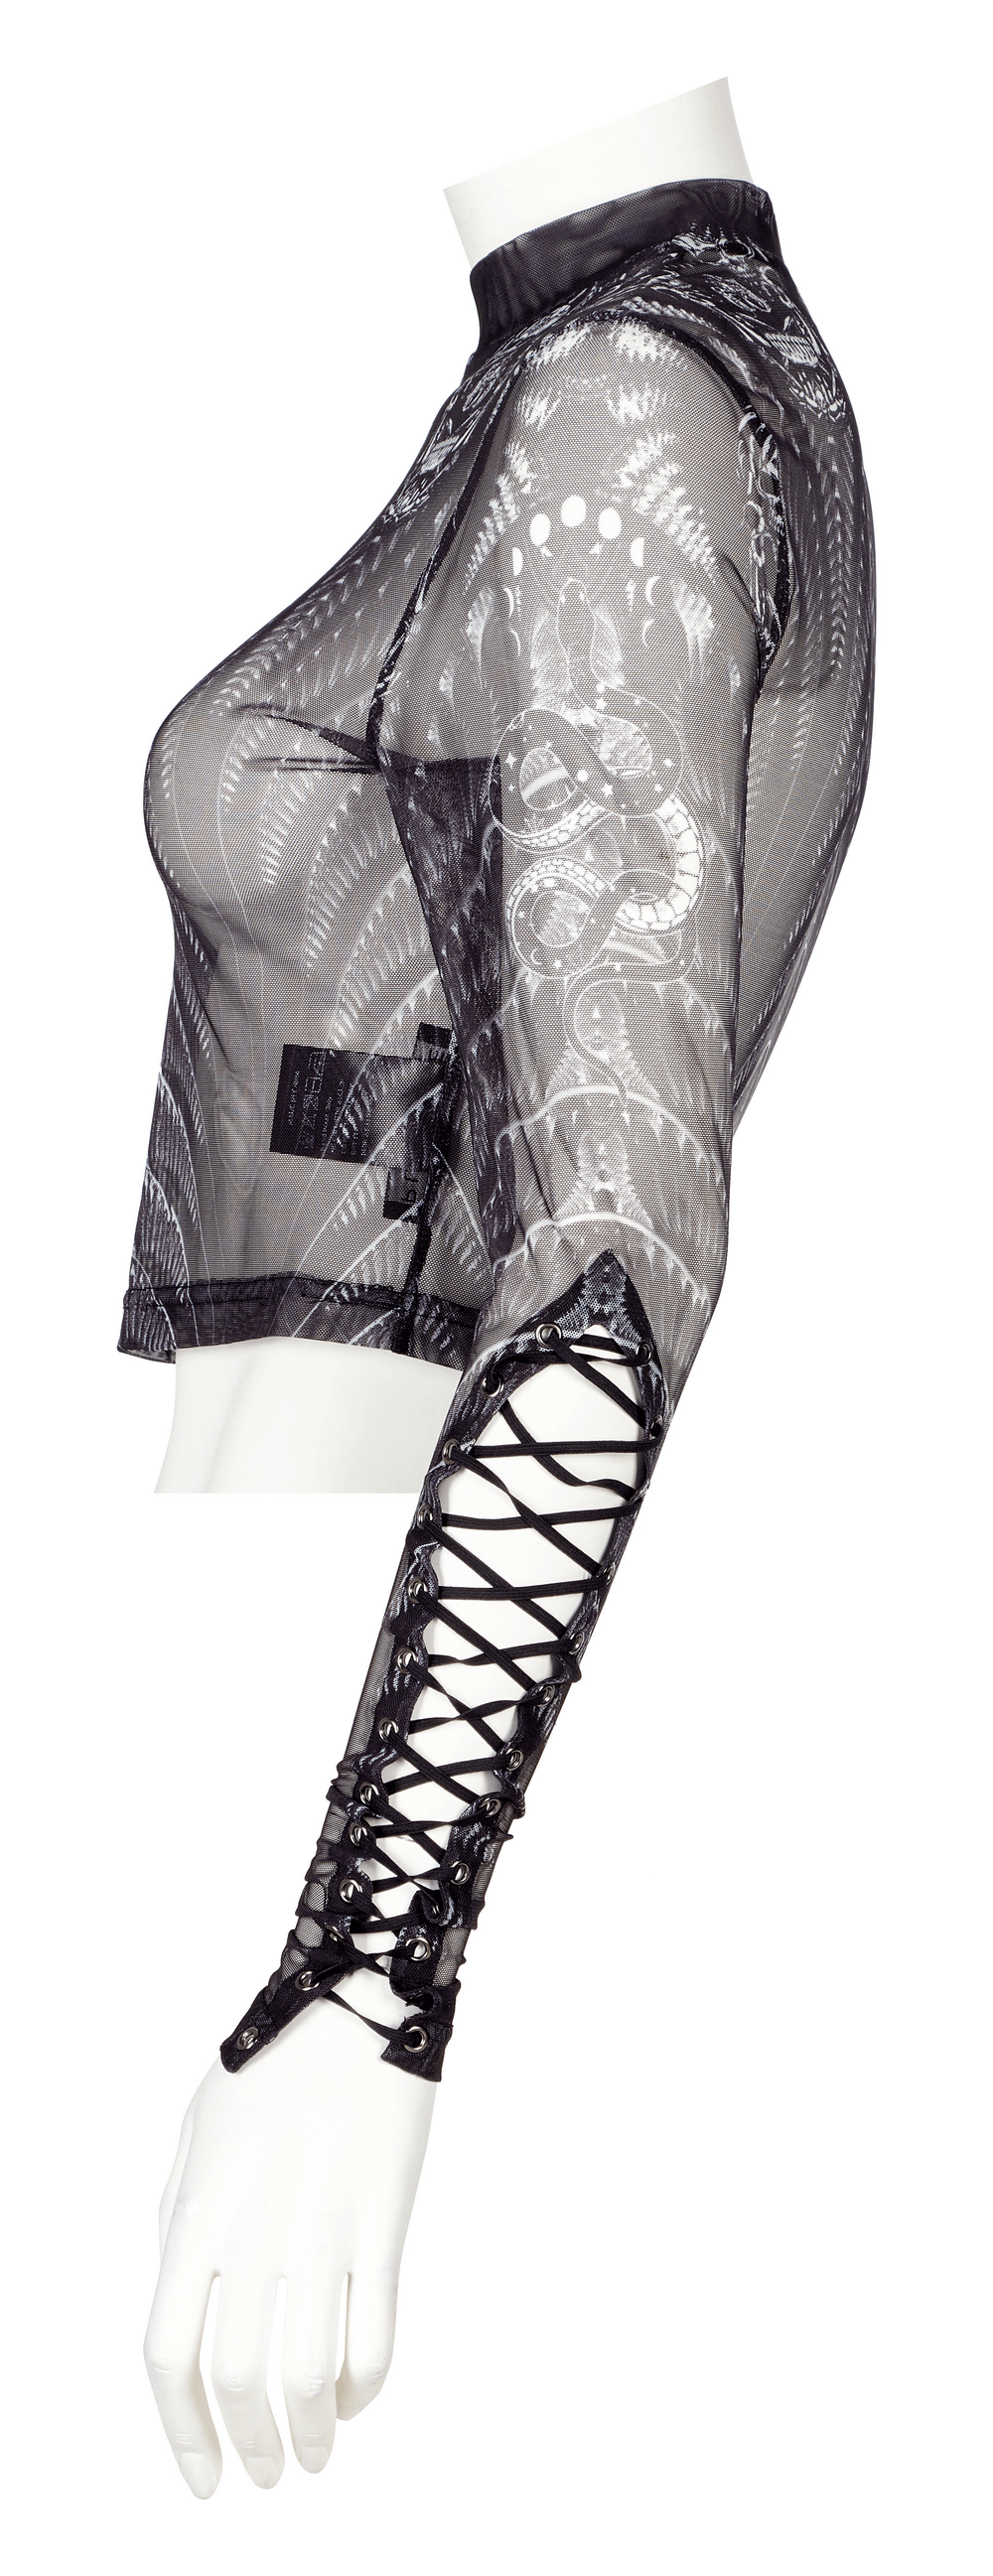 Dark Elegance High Neck Mesh Top with Skeleton Print - HARD'N'HEAVY